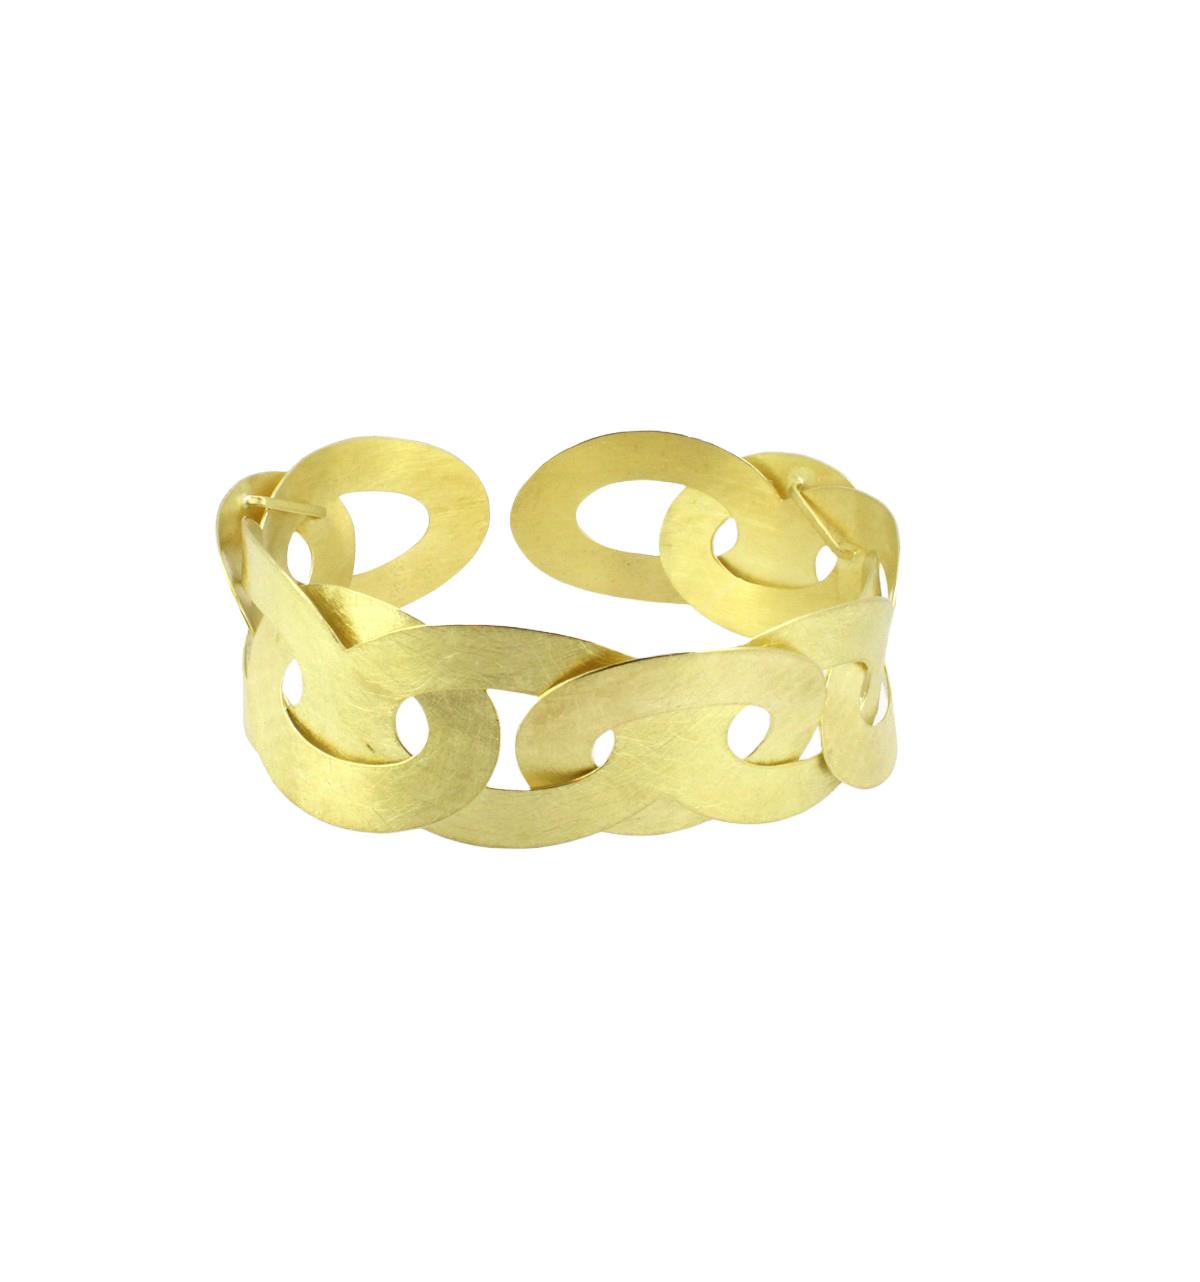 Armspange Chain 18ct Gold - Maier und Beck - 2750137